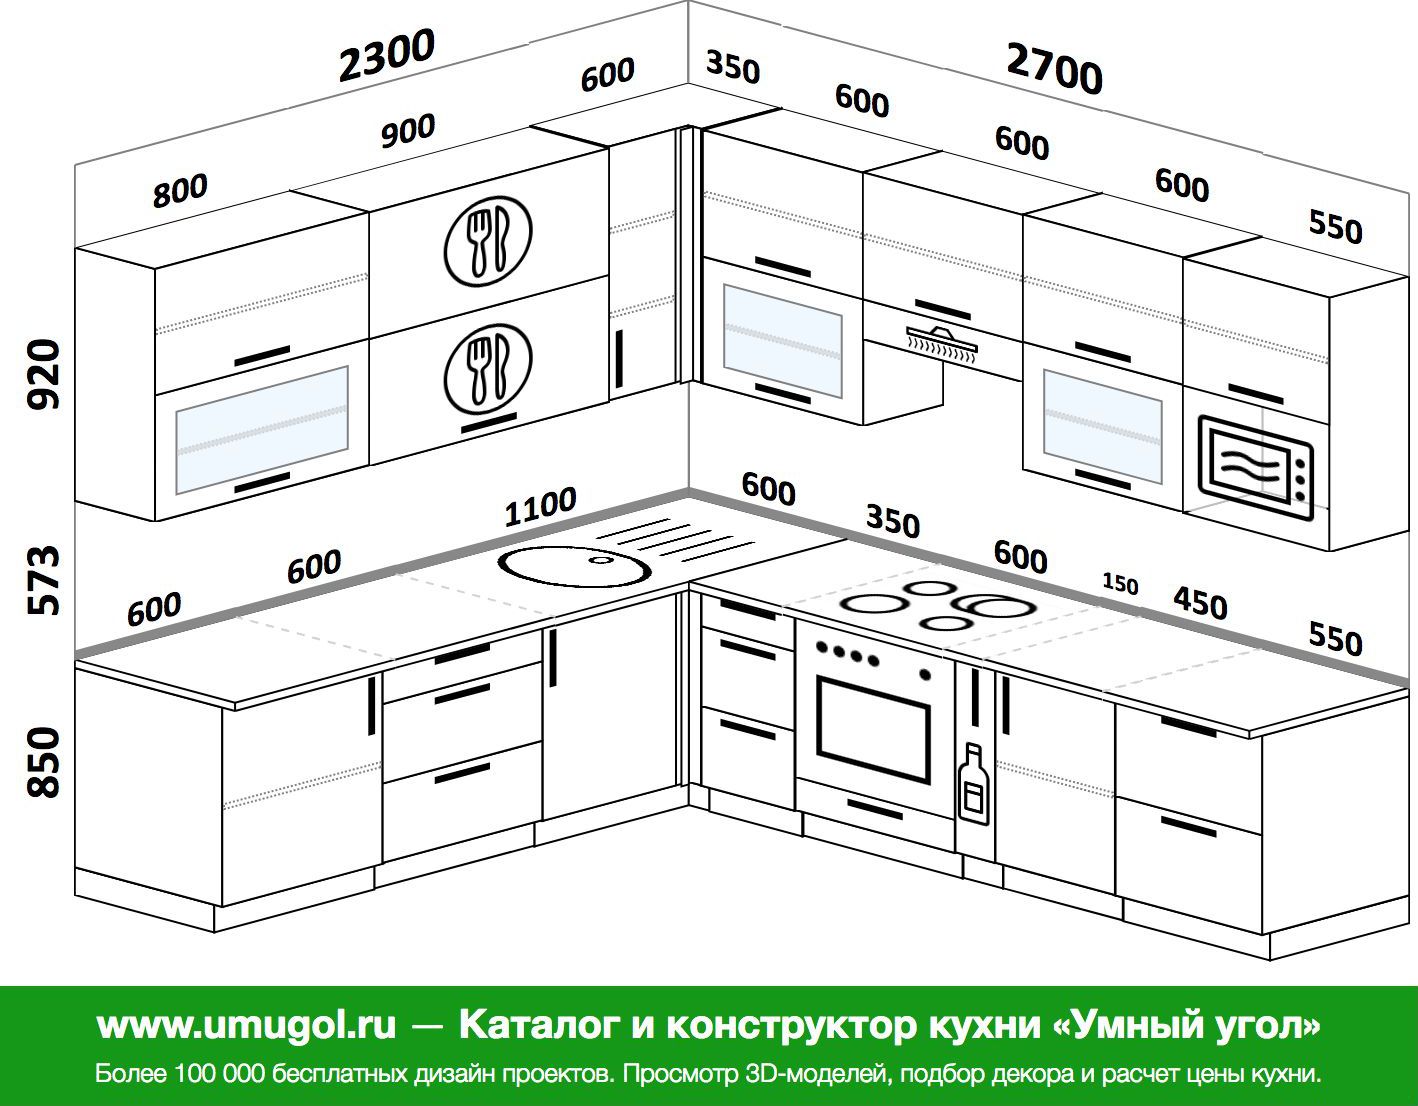 расстояние между ящиками кухни